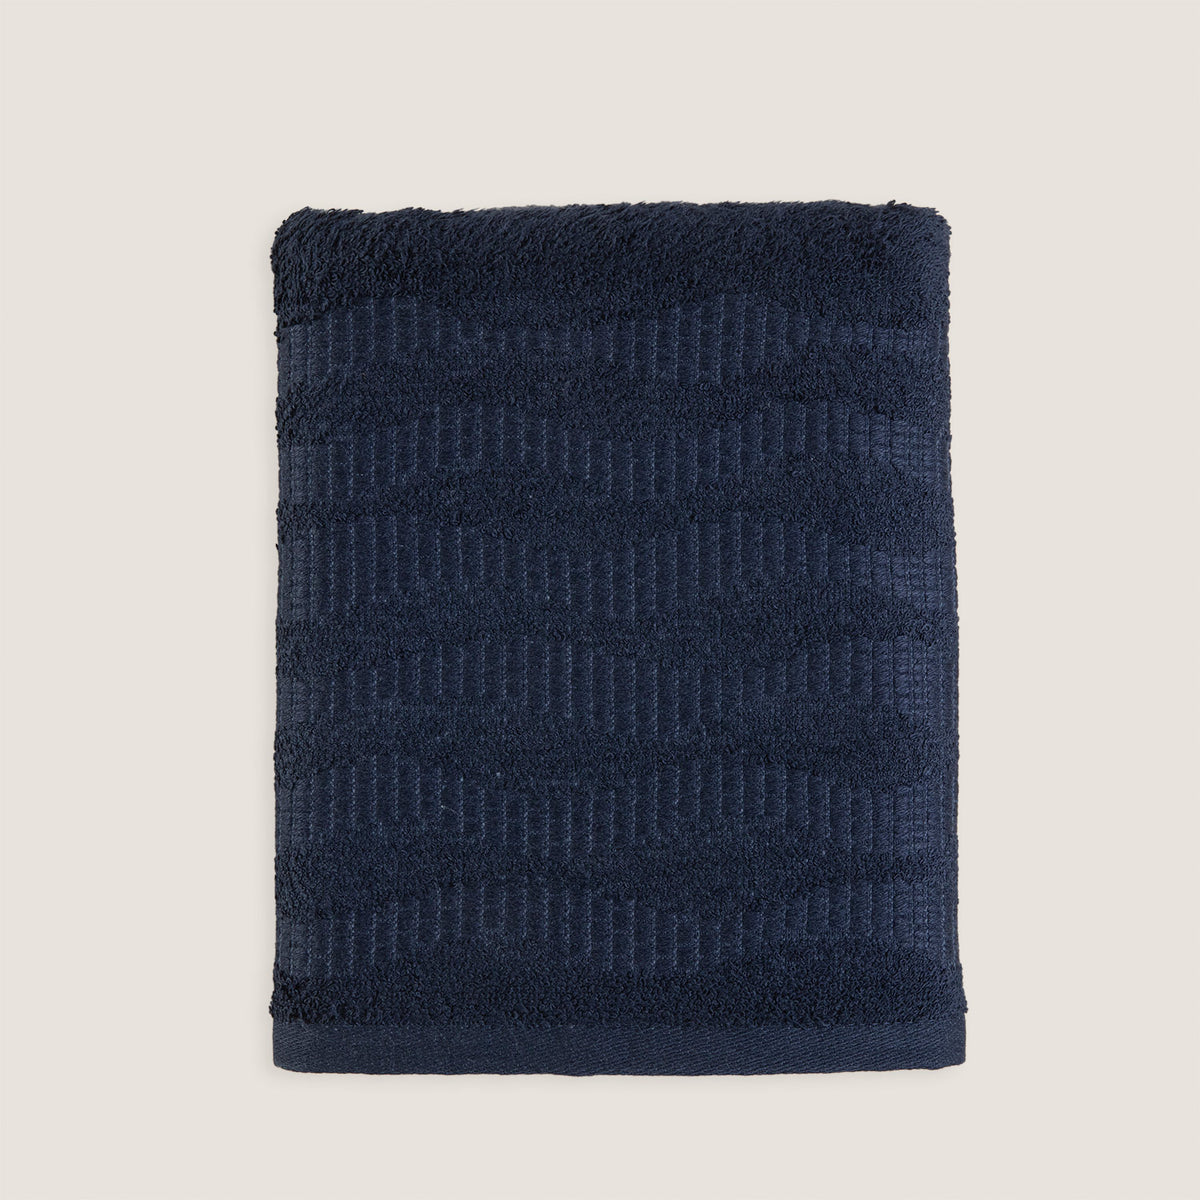 Chakra Ariya Towel 50X90Cm Marine Blue